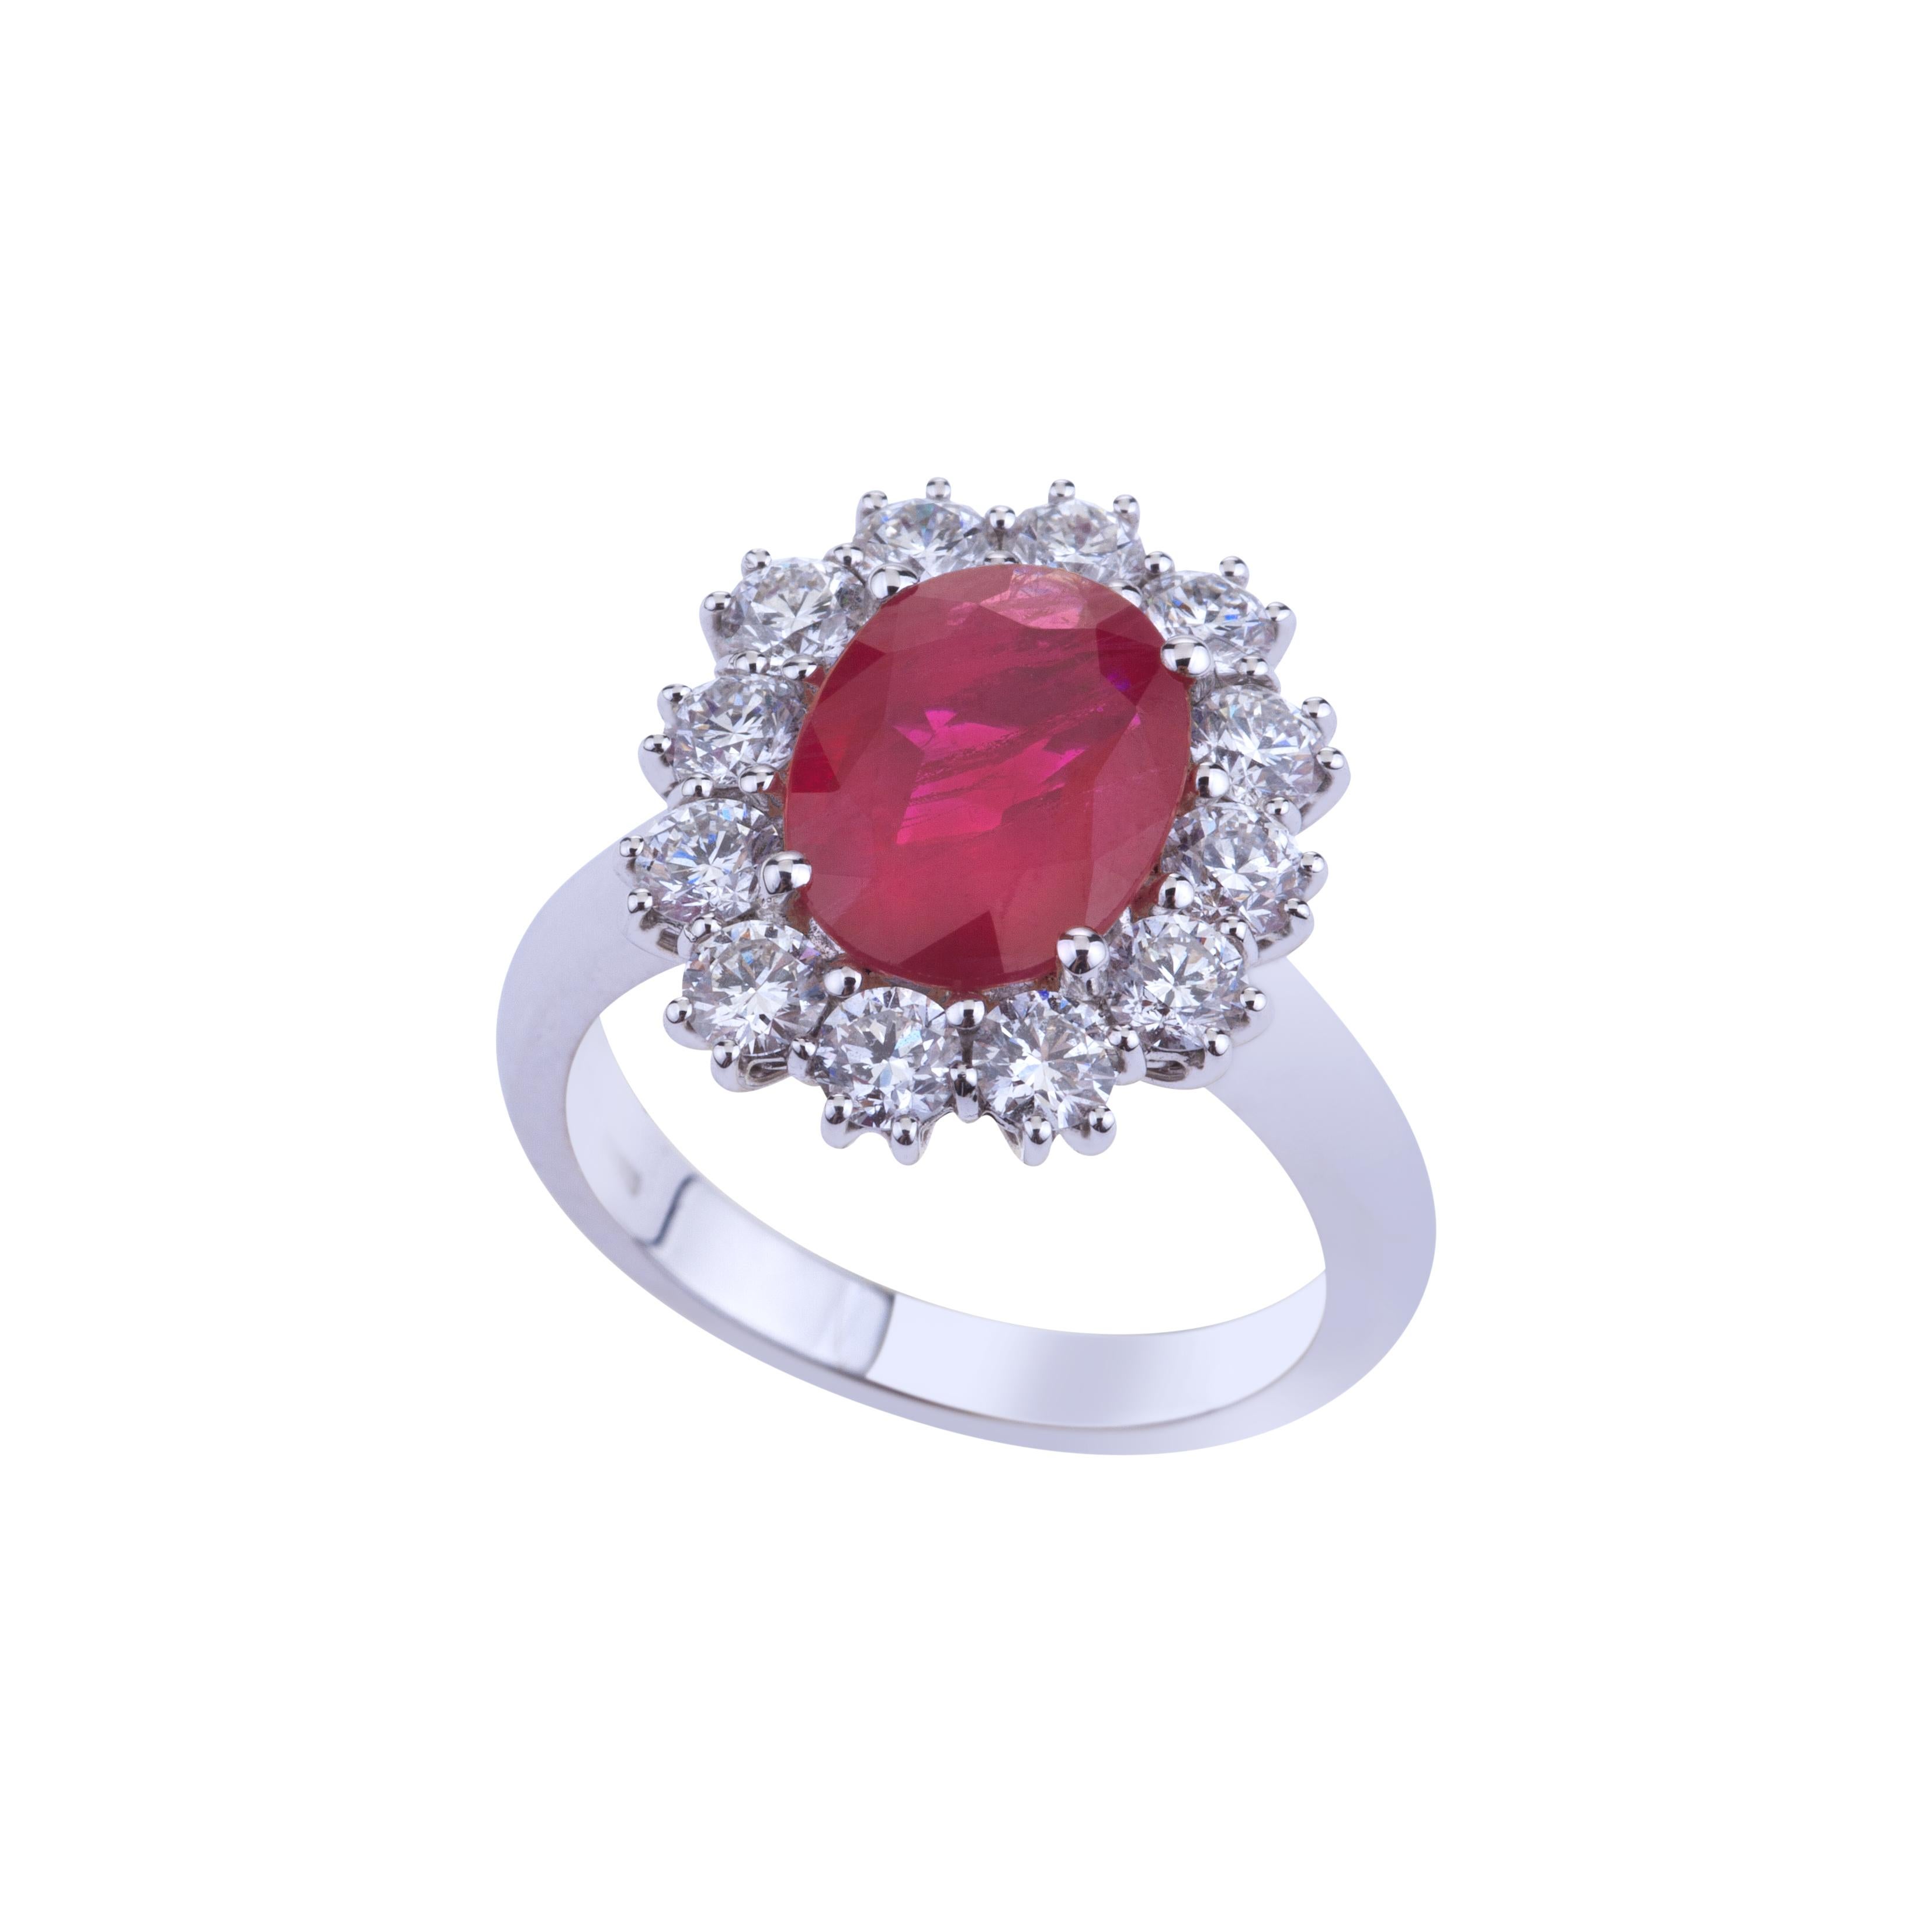 Ovaler Burma-Rubin mit runden Diamanten Weißgoldring mit Zertifikat.
Klassisches Design für diesen Ring mit einem atemberaubenden ovalen Rubin (ct. 3,02 Zertifikat 11,15x8,27x3,72 facettierter Edelstein rot oval/gemischter Schliff) aus Burma mit